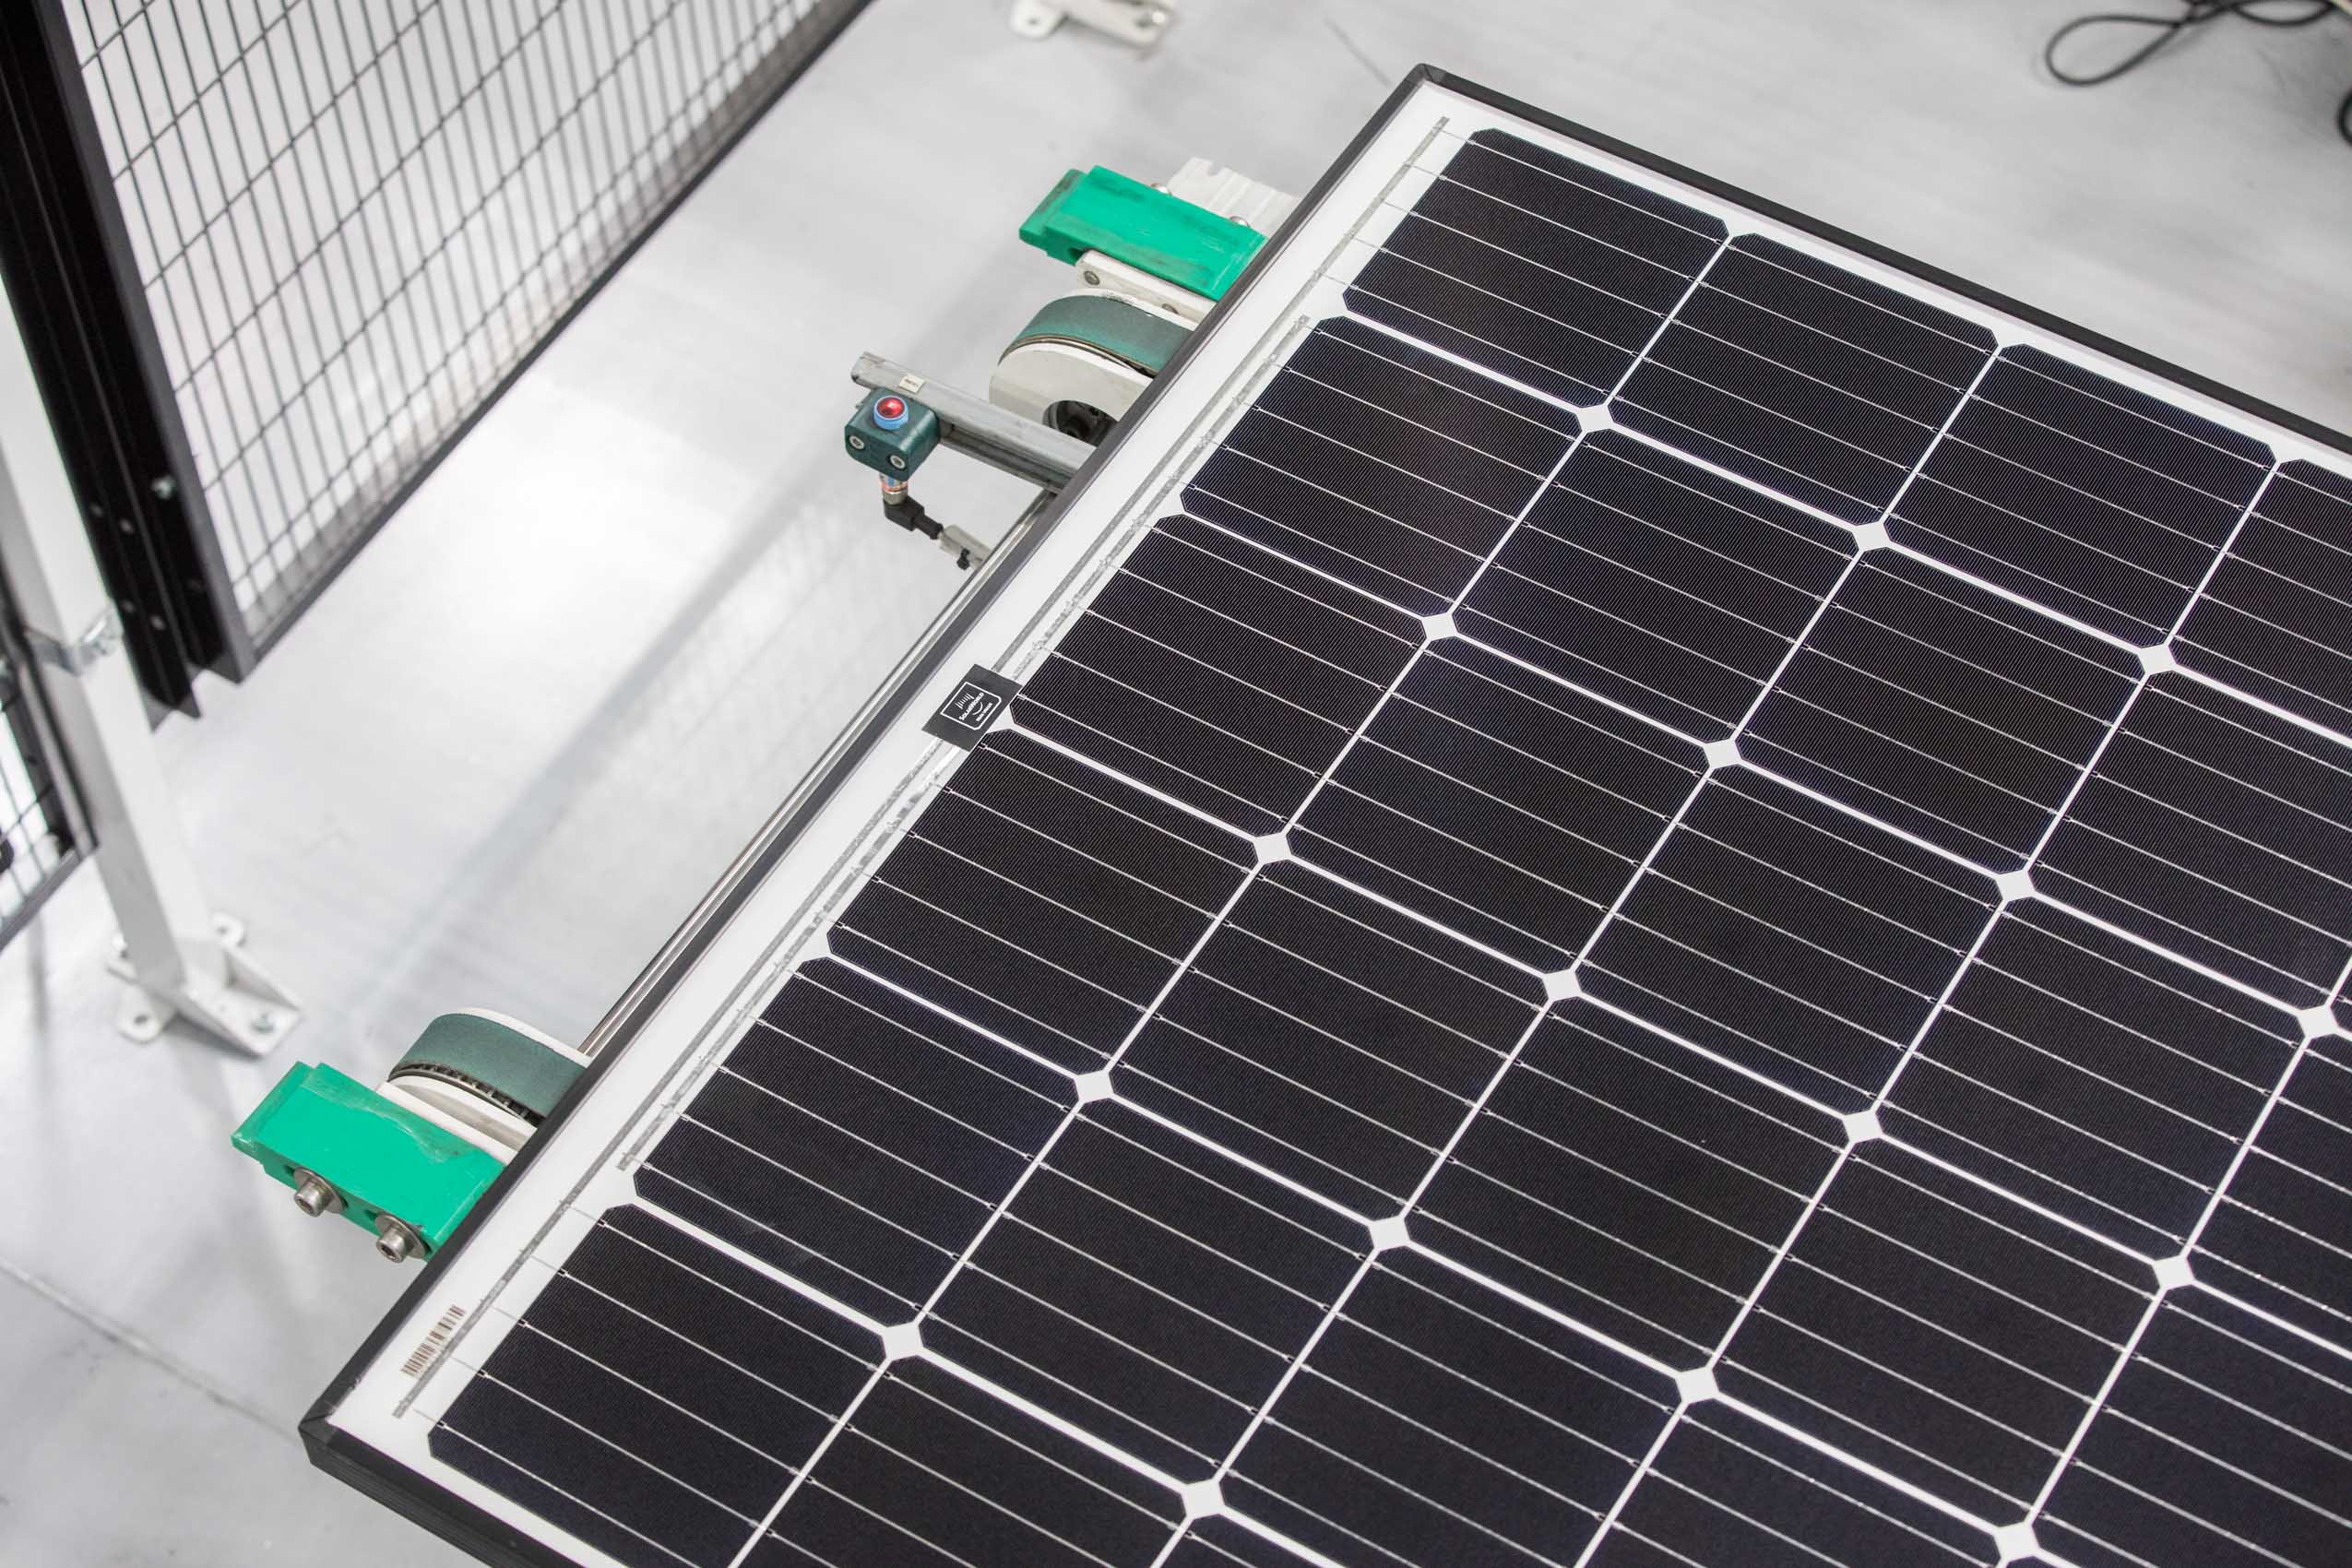 Solar panel in facility Rich Crowder